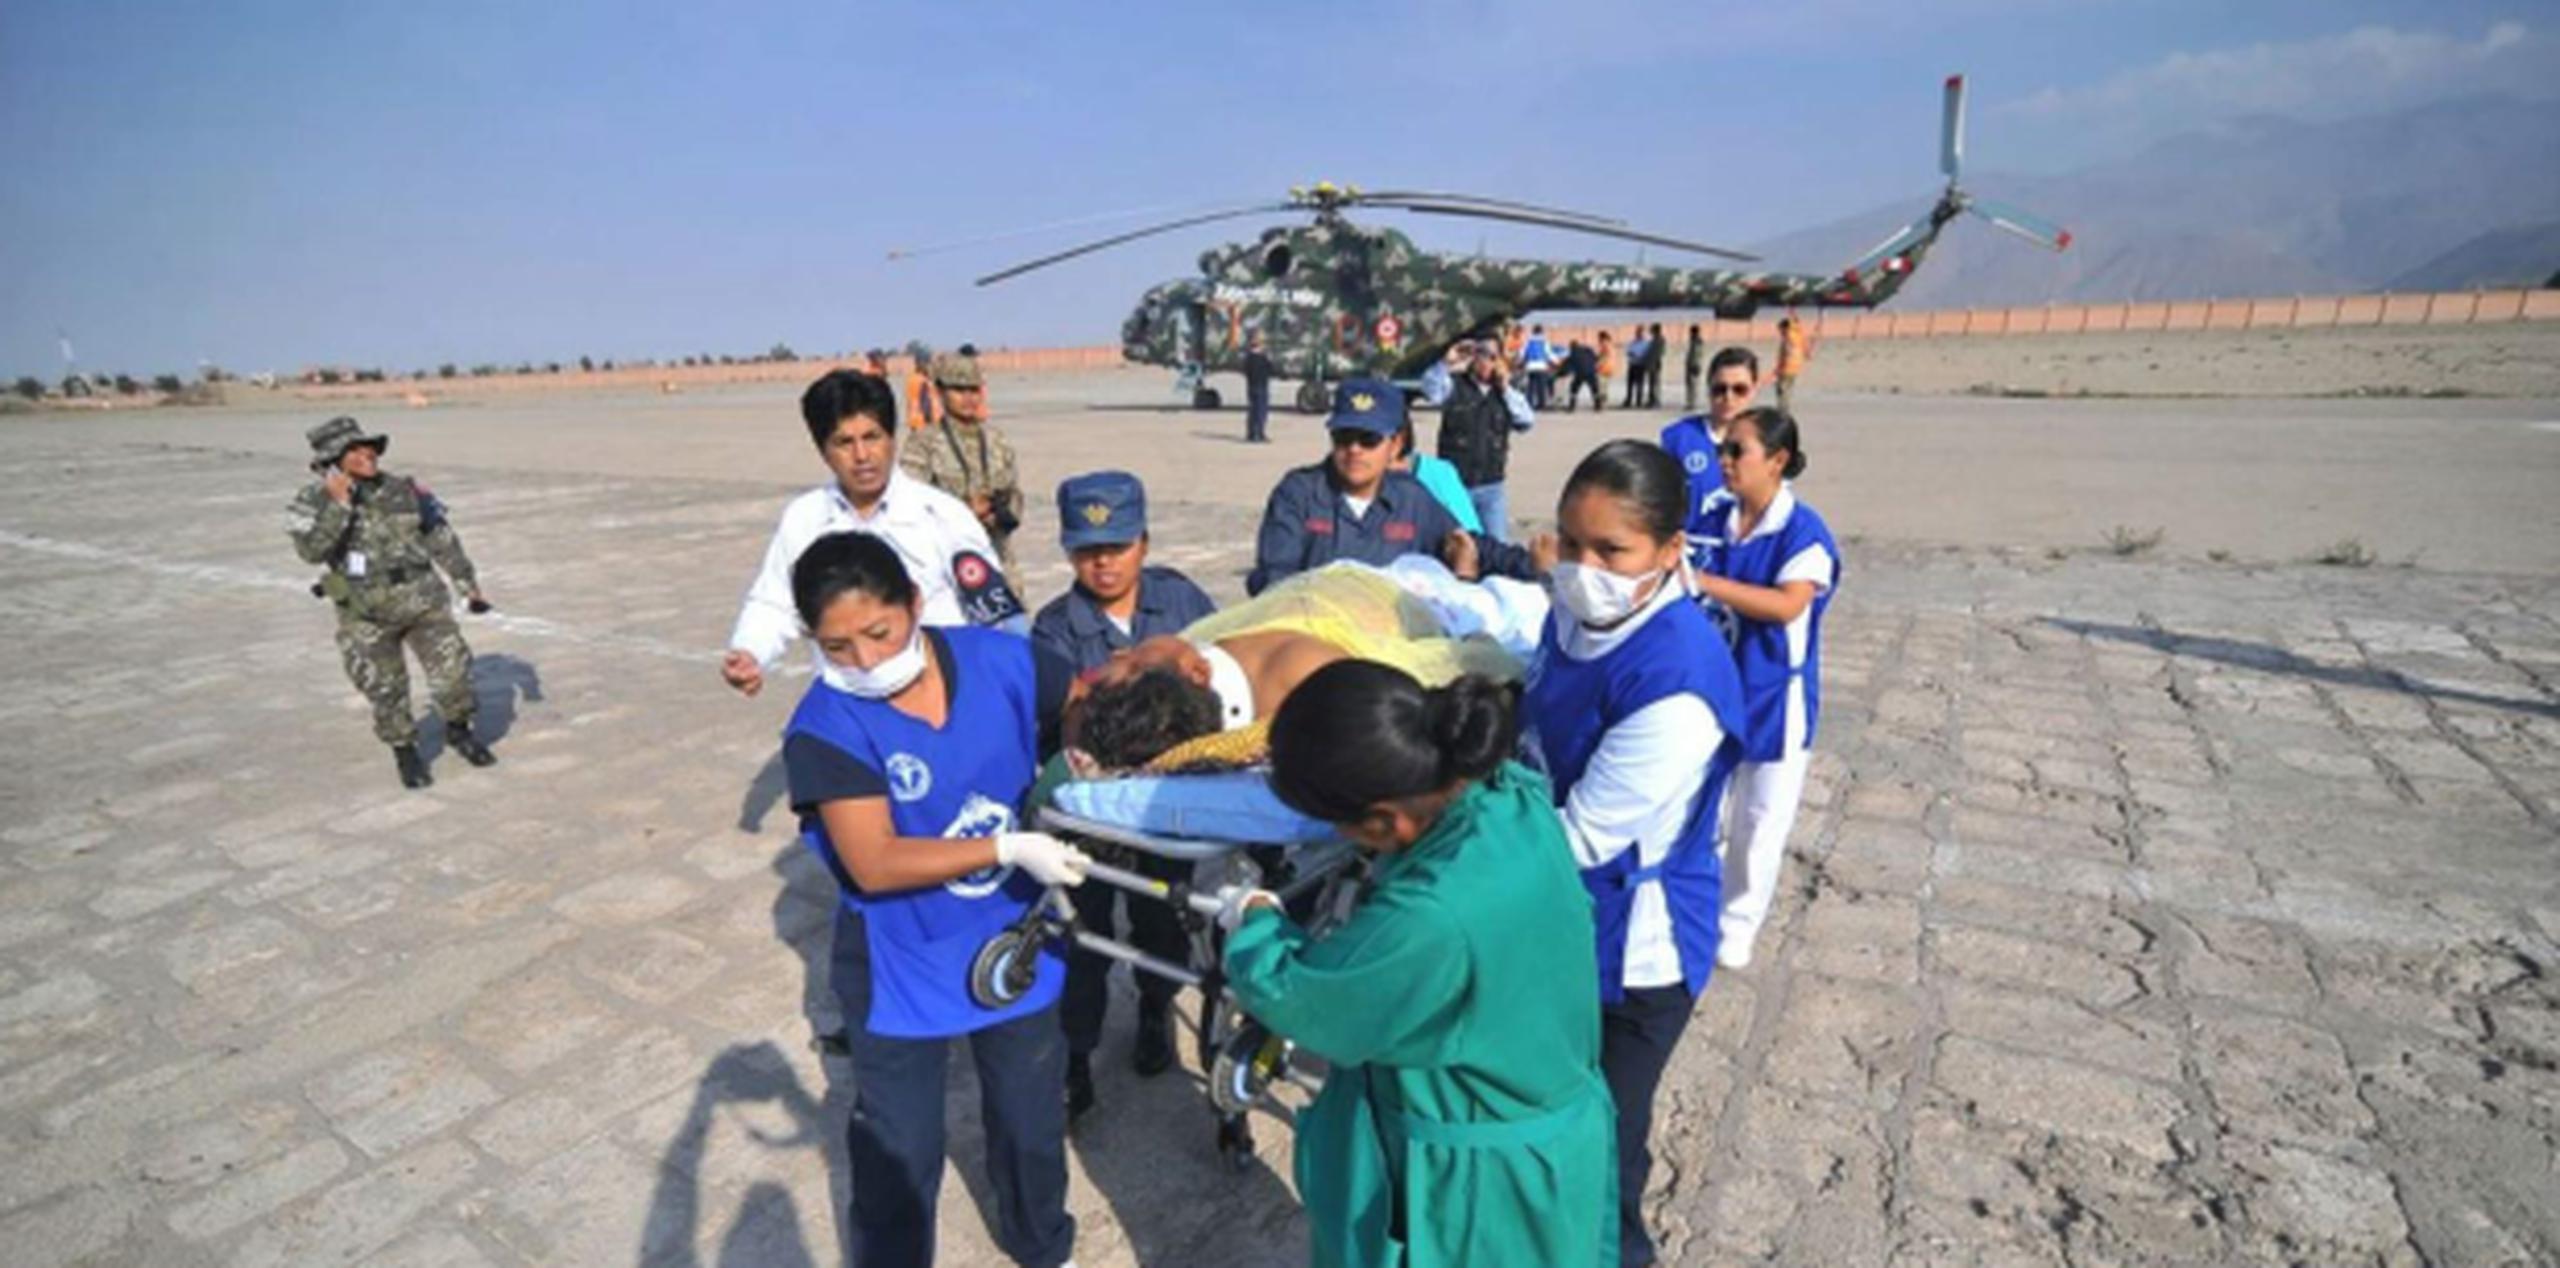 Trabajadores de la salud transportan a un hombre que sufrió herida en el accidente de autobús en Arequipa, Perú. (AP / Diego Ramos)